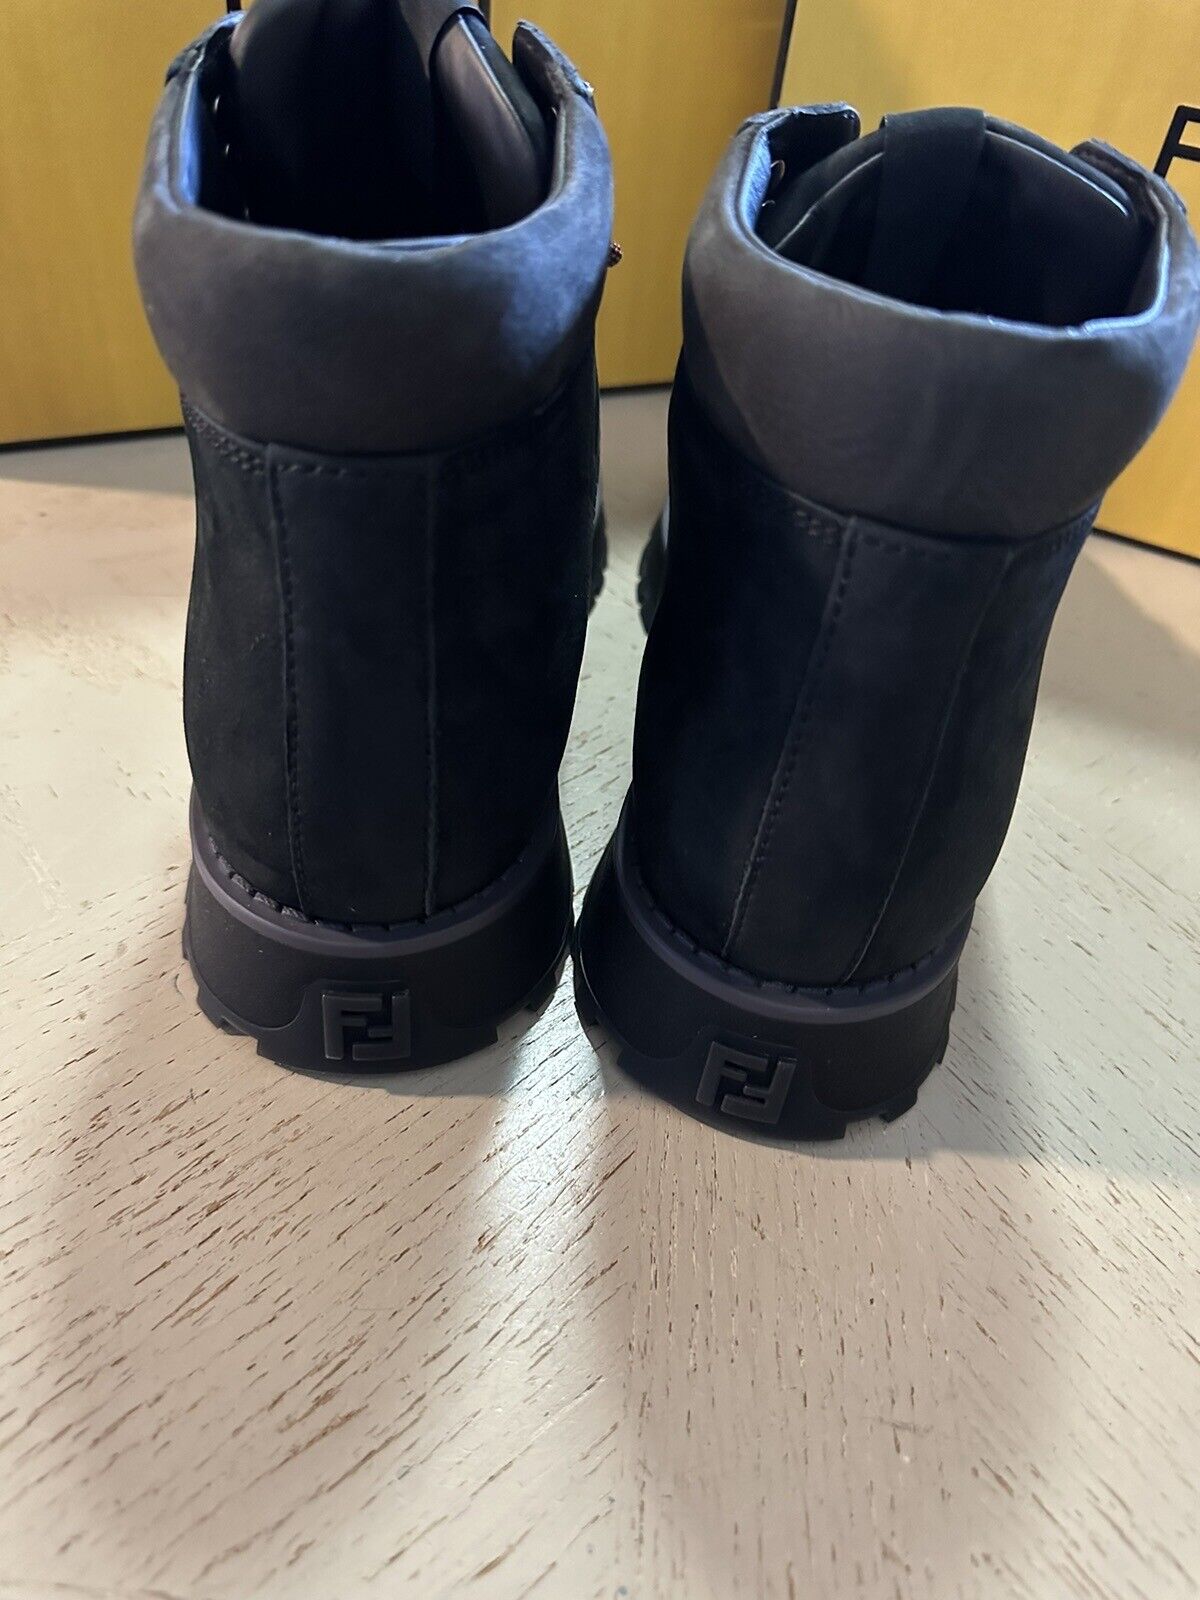 NIB $1259 Fendi Men’s Calf Leather FF Logo Boots Shoes Black 10 US/9 UK 7U1577